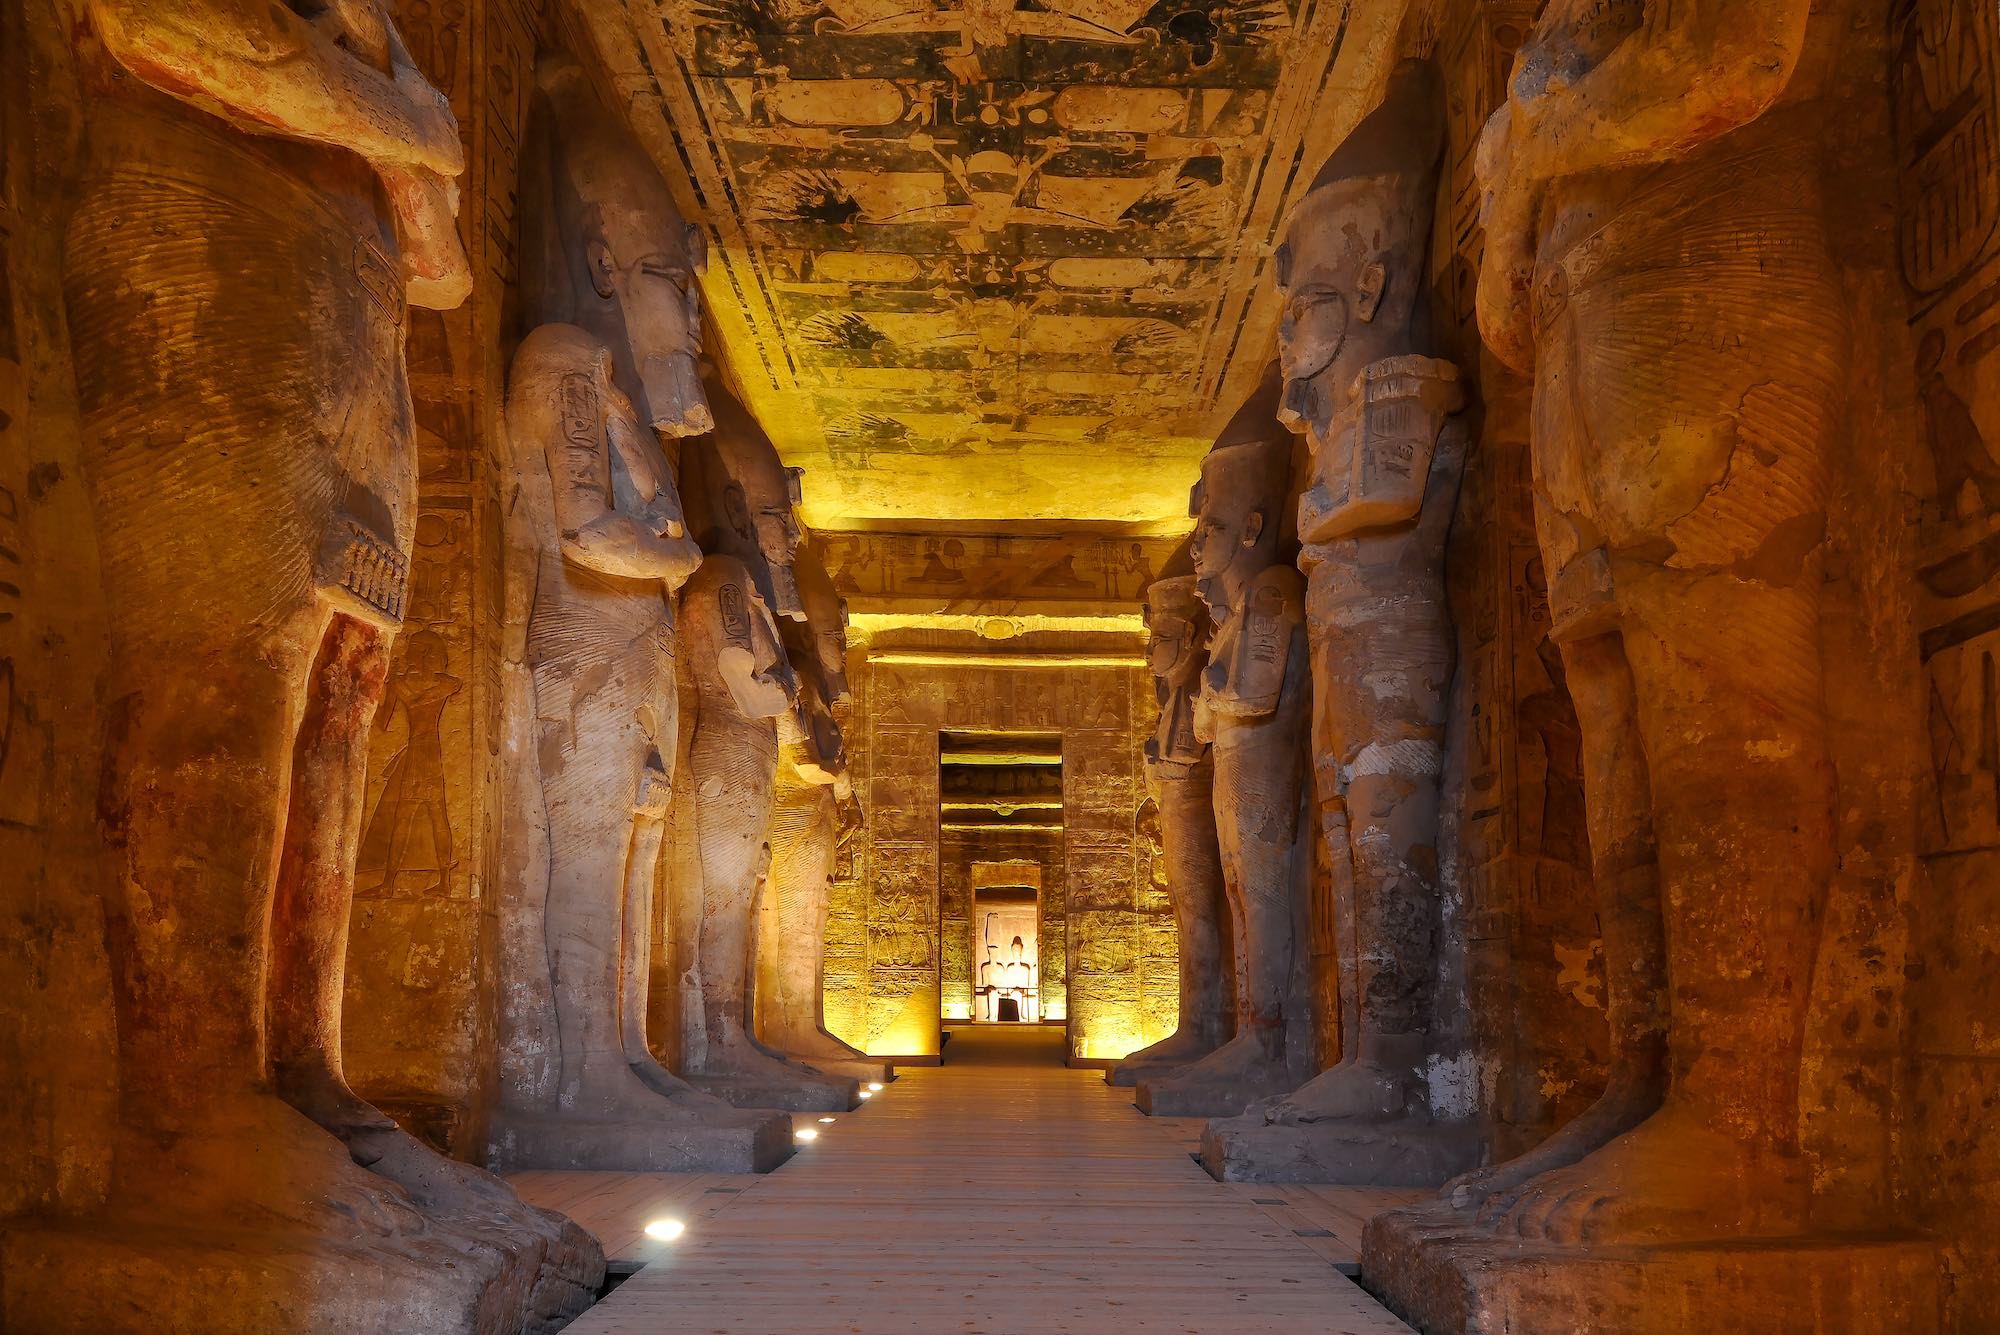 Ägypten, Abu Simbel